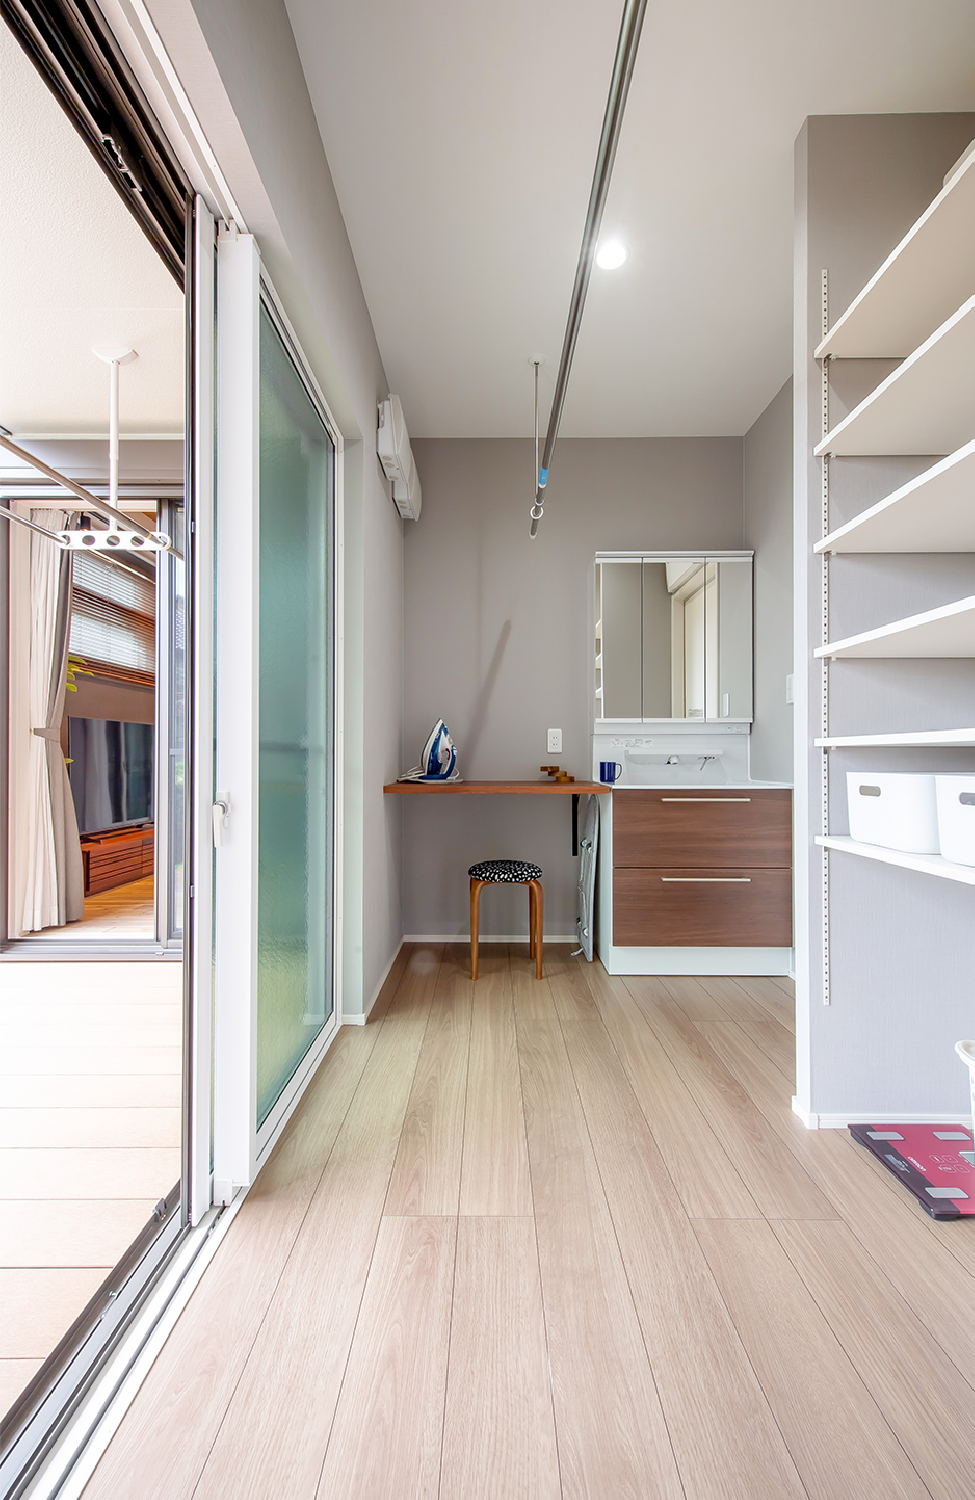 アイデザインホーム
注文住宅
愛知県刈谷市
アイロン台や室内物干しを備えた便利なランドリールーム。外には急な雨でも安心のインナーテラスがあります。